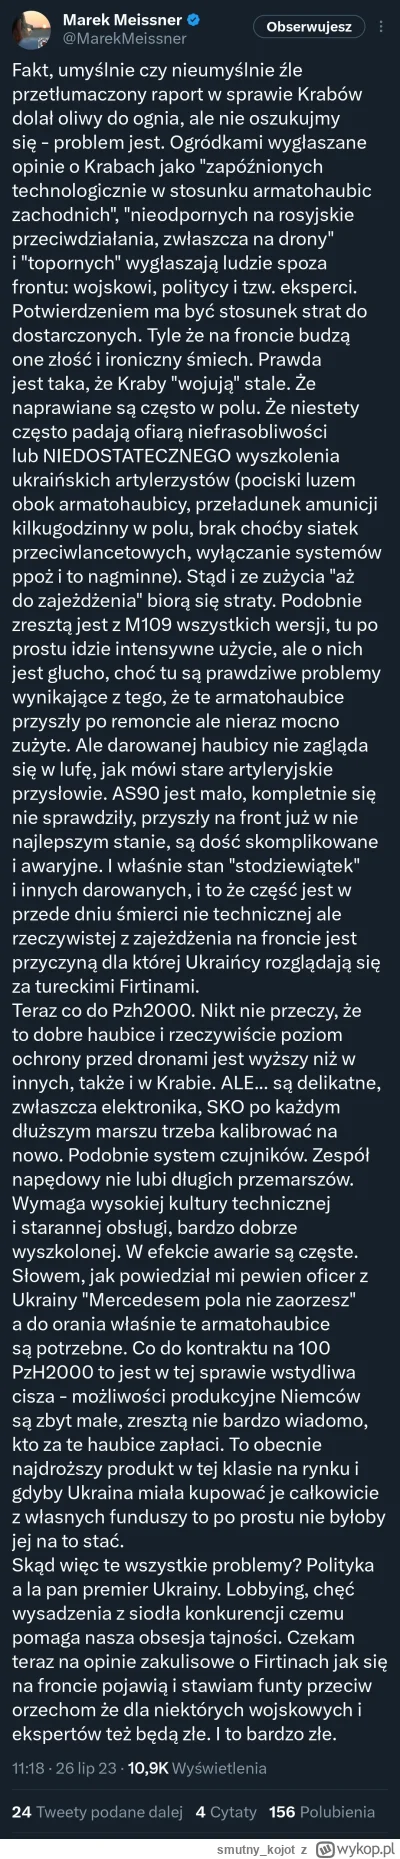 smutny_kojot - Tutaj też ciekawie napisane o armatohaubicach nie tylko polskich w kon...